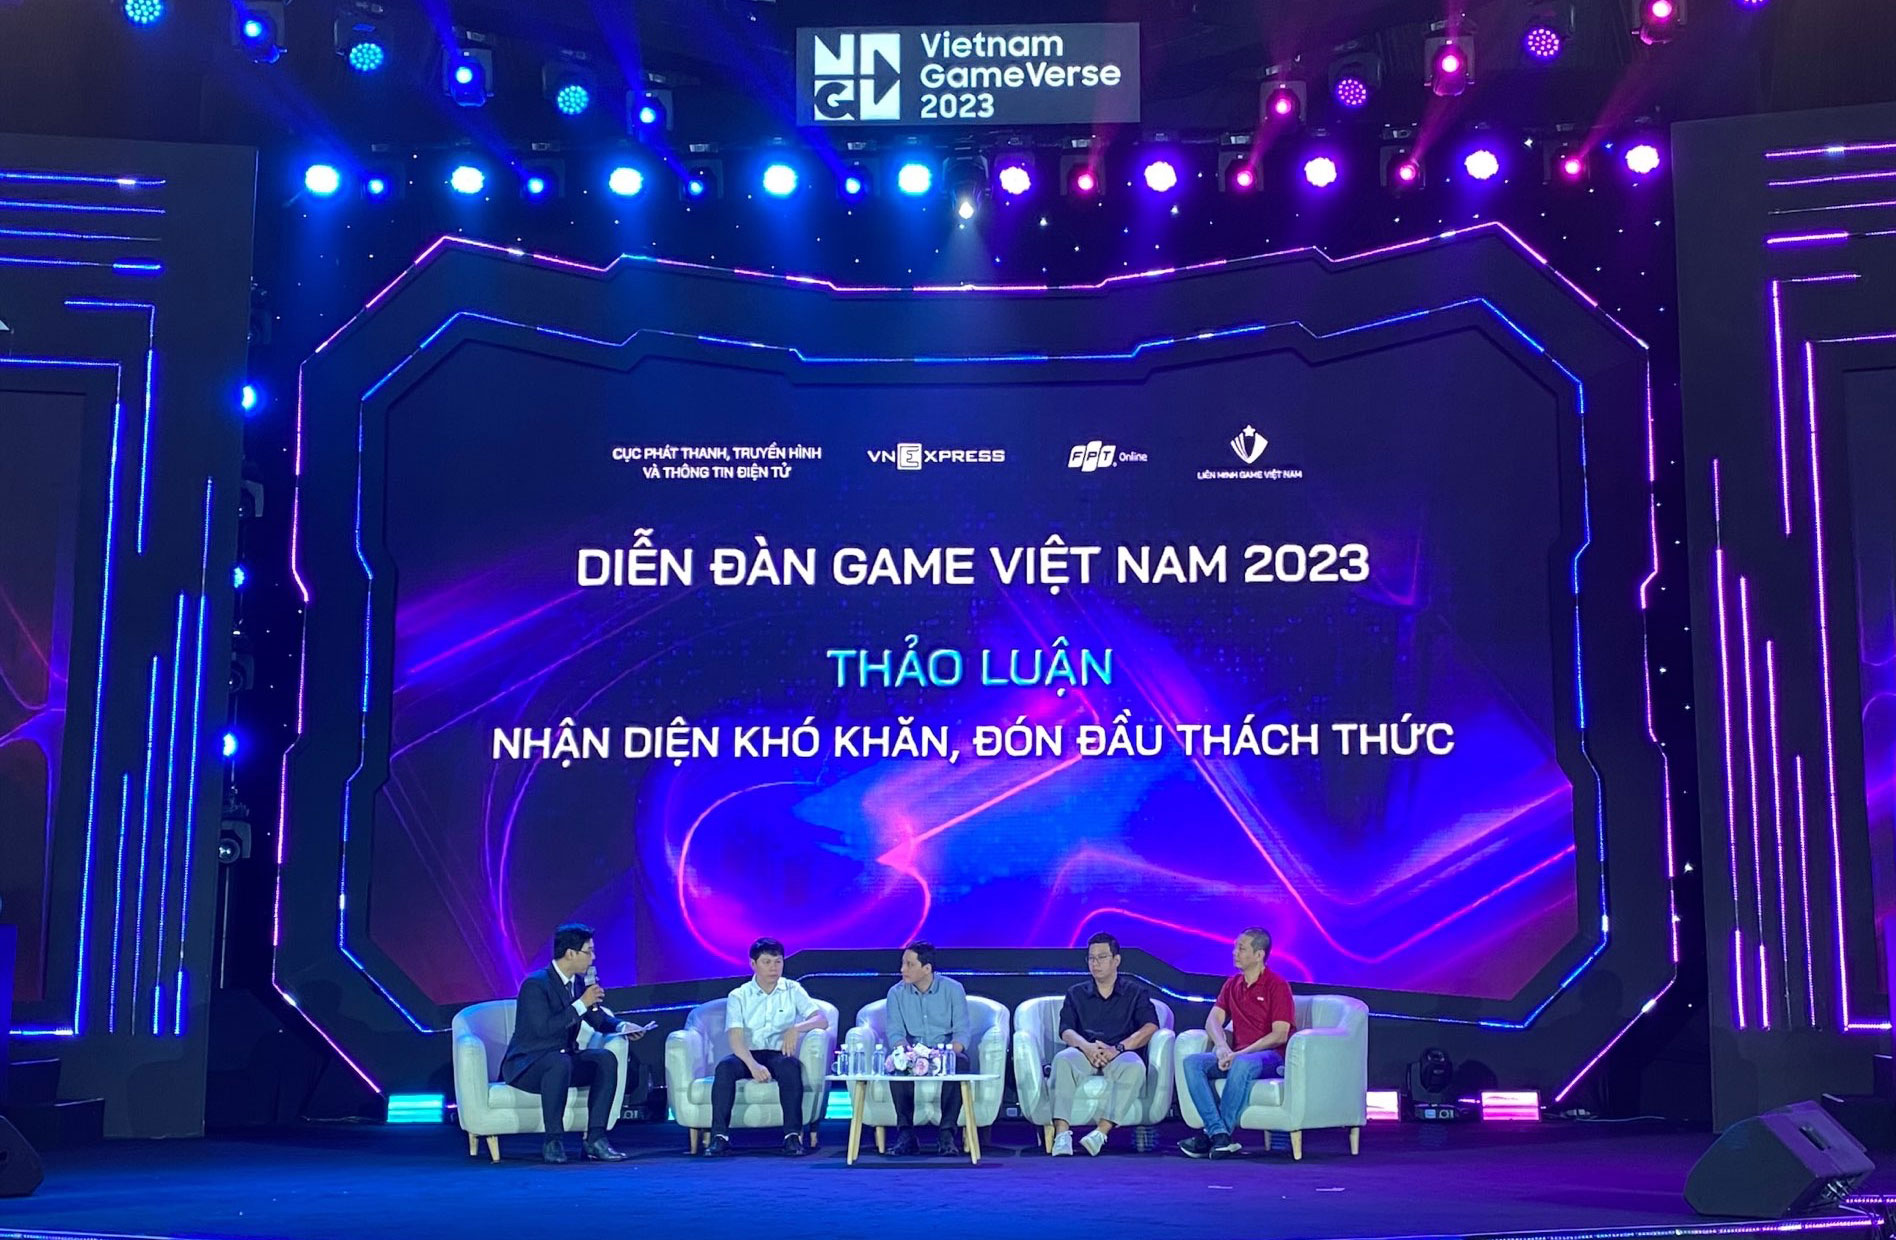 Ngắm Nhìn Loạt Ảnh Thú Vị Về Sự Kiện Vietnam Gameverse 2023